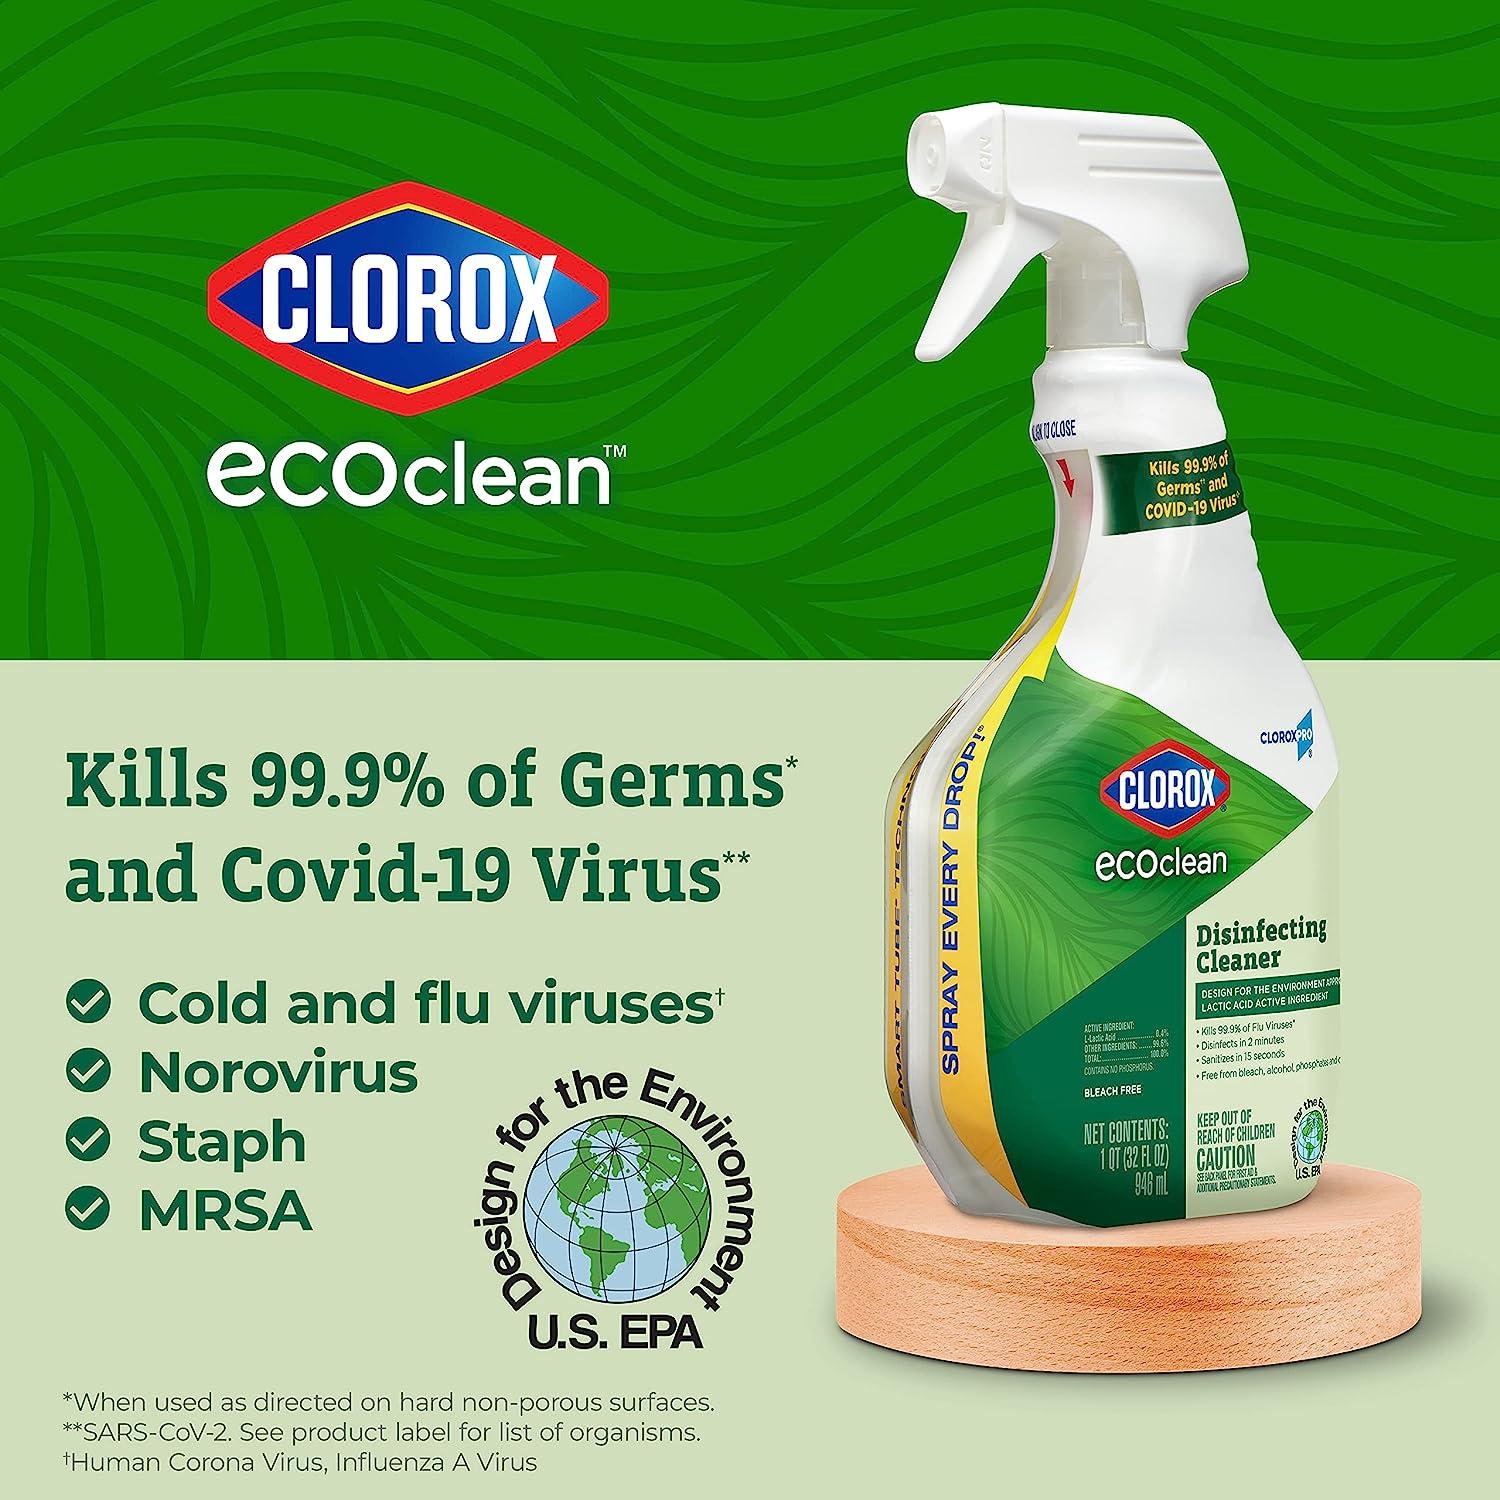 Clorox Clean-up Cleaner + Bleach Original 128 Ounce